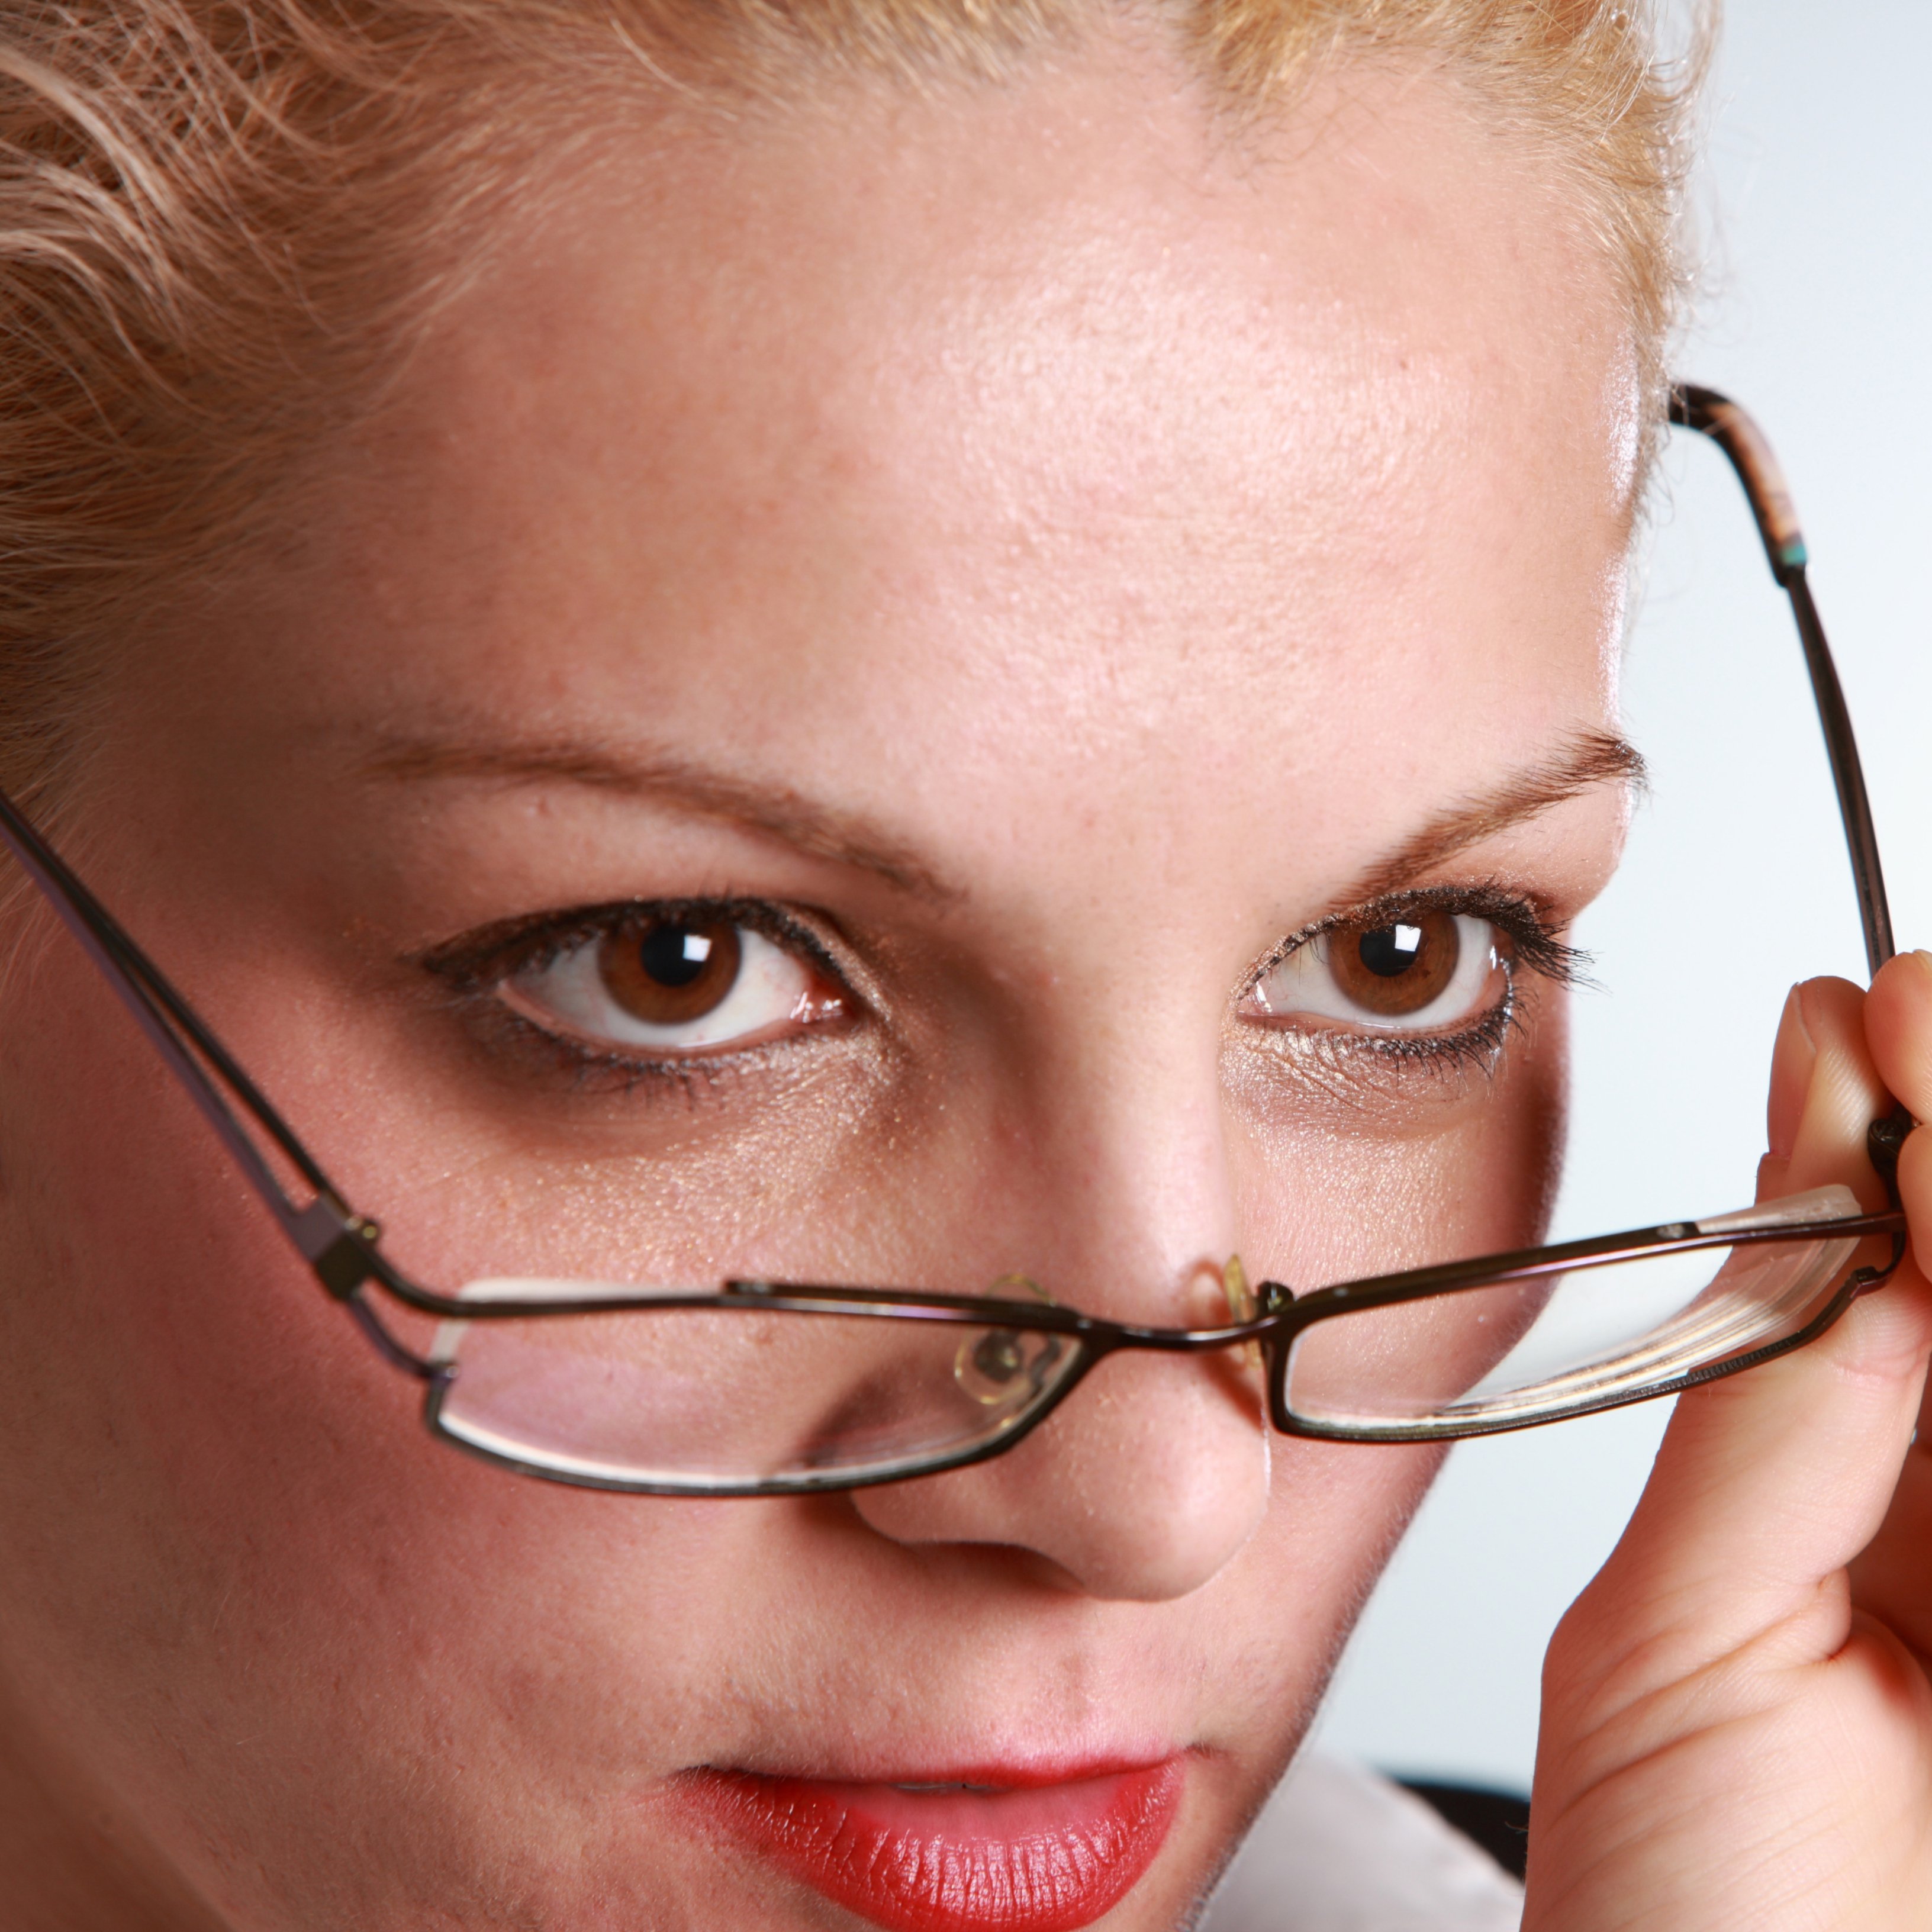 Consells per millorar la vista cansada a partir dels 40